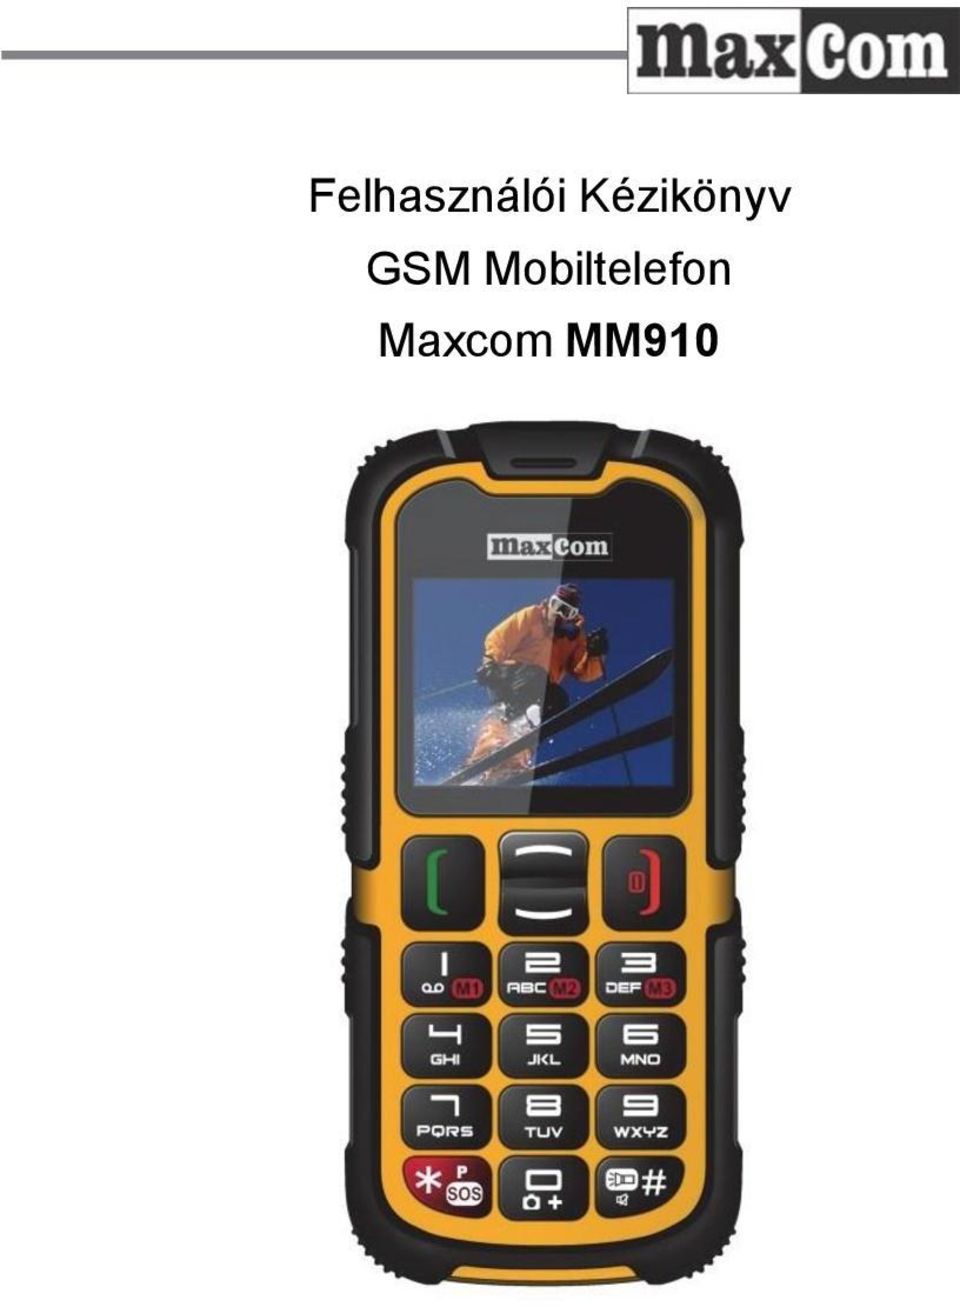 Felhasználói Kézikönyv GSM Mobiltelefon Maxcom MM910 - PDF Ingyenes letöltés